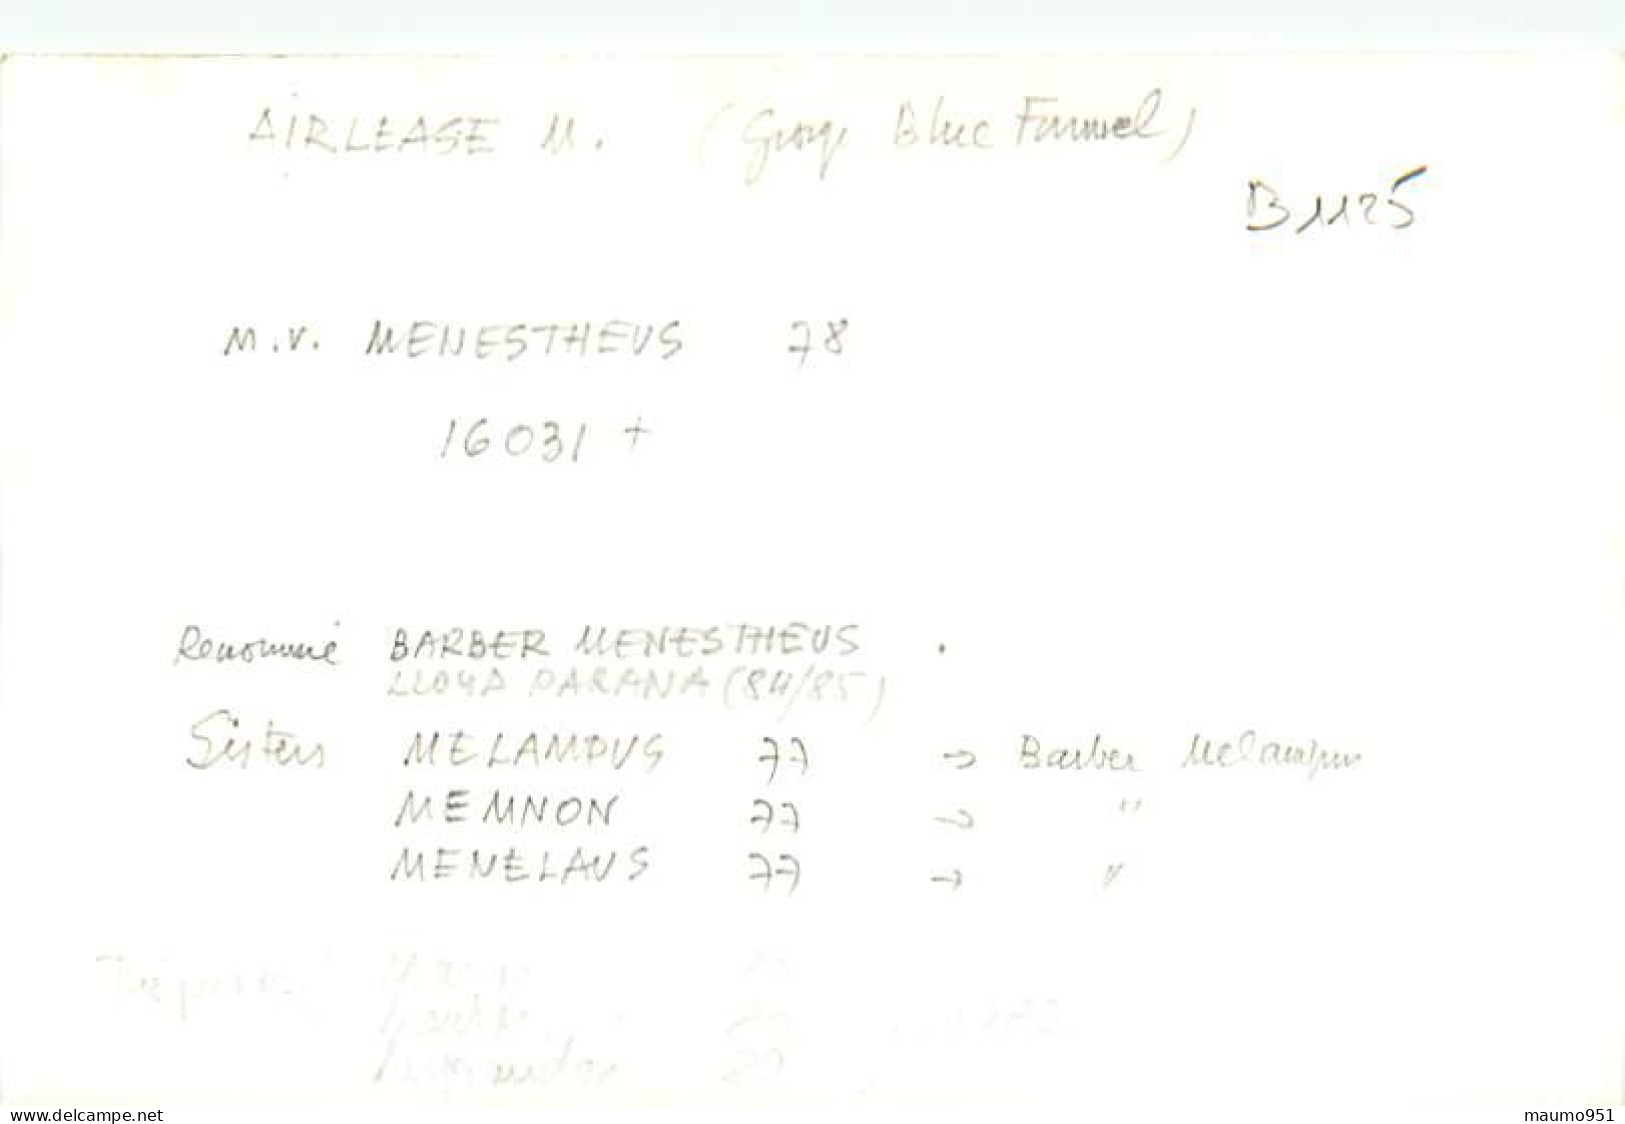 1125 CLICHE BATEAU PREFIXE M.V. - LE MENESTHEUS DE 1978 - CATEGORIE 16031 TONNES - FORMAT CPA N° B 1125 - Bateaux